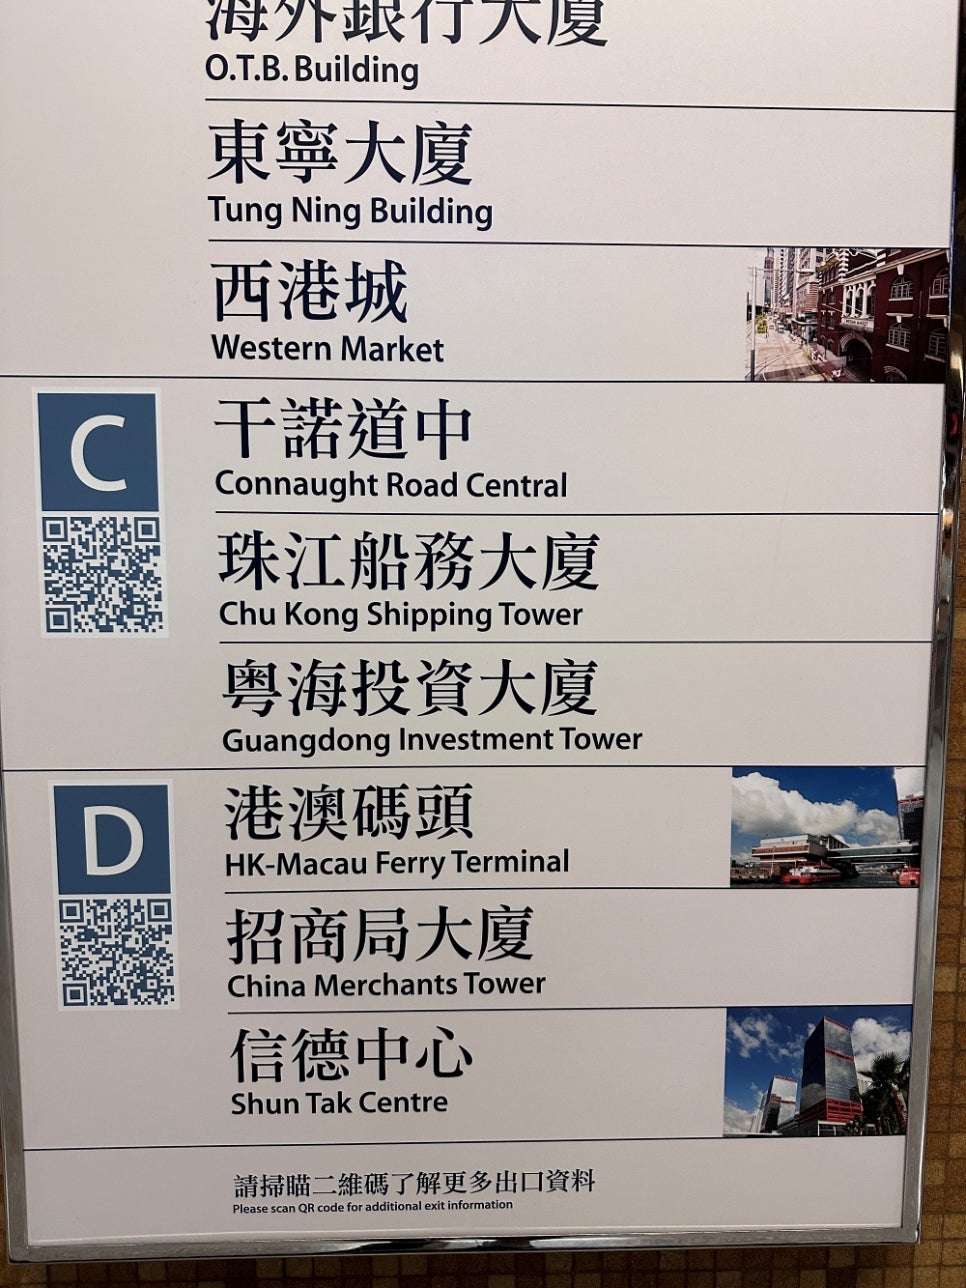 홍콩에서 마카오 페리 티켓 무료 예약 후기 코타이젯